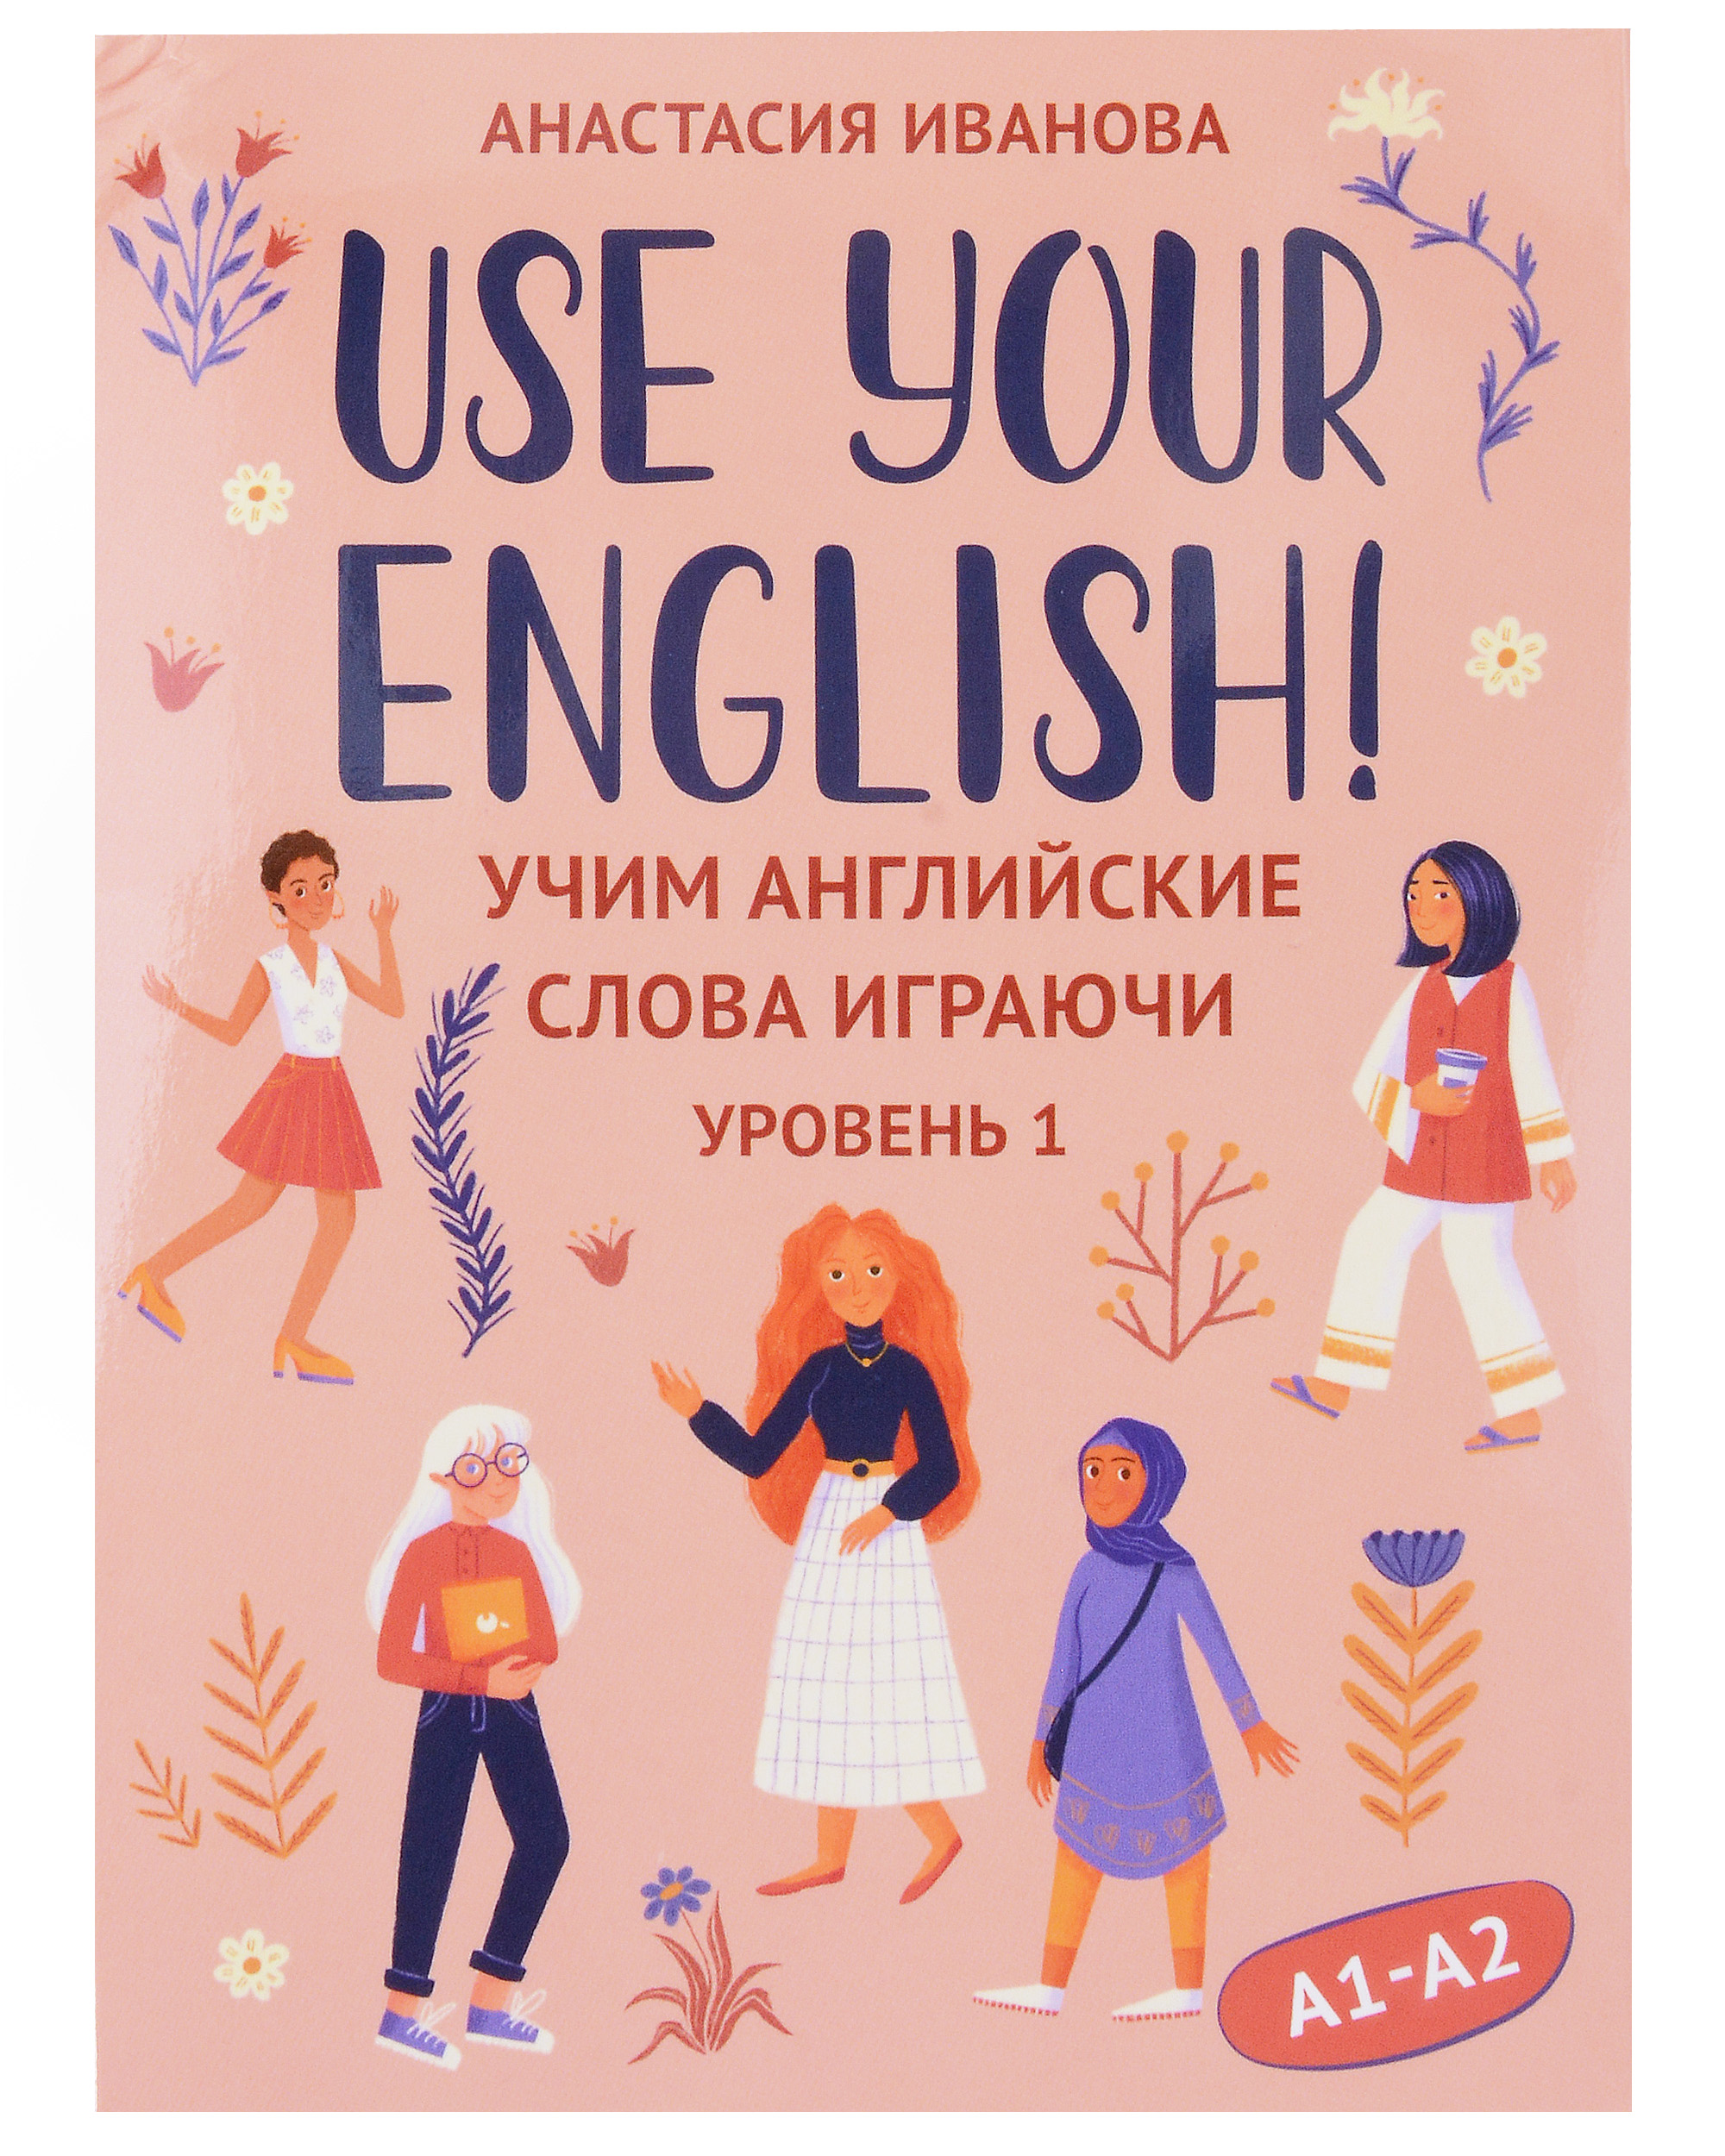 Иванова Анастасия Евгеньевна Use your English! Учим английские слова играючи. Уровень 1